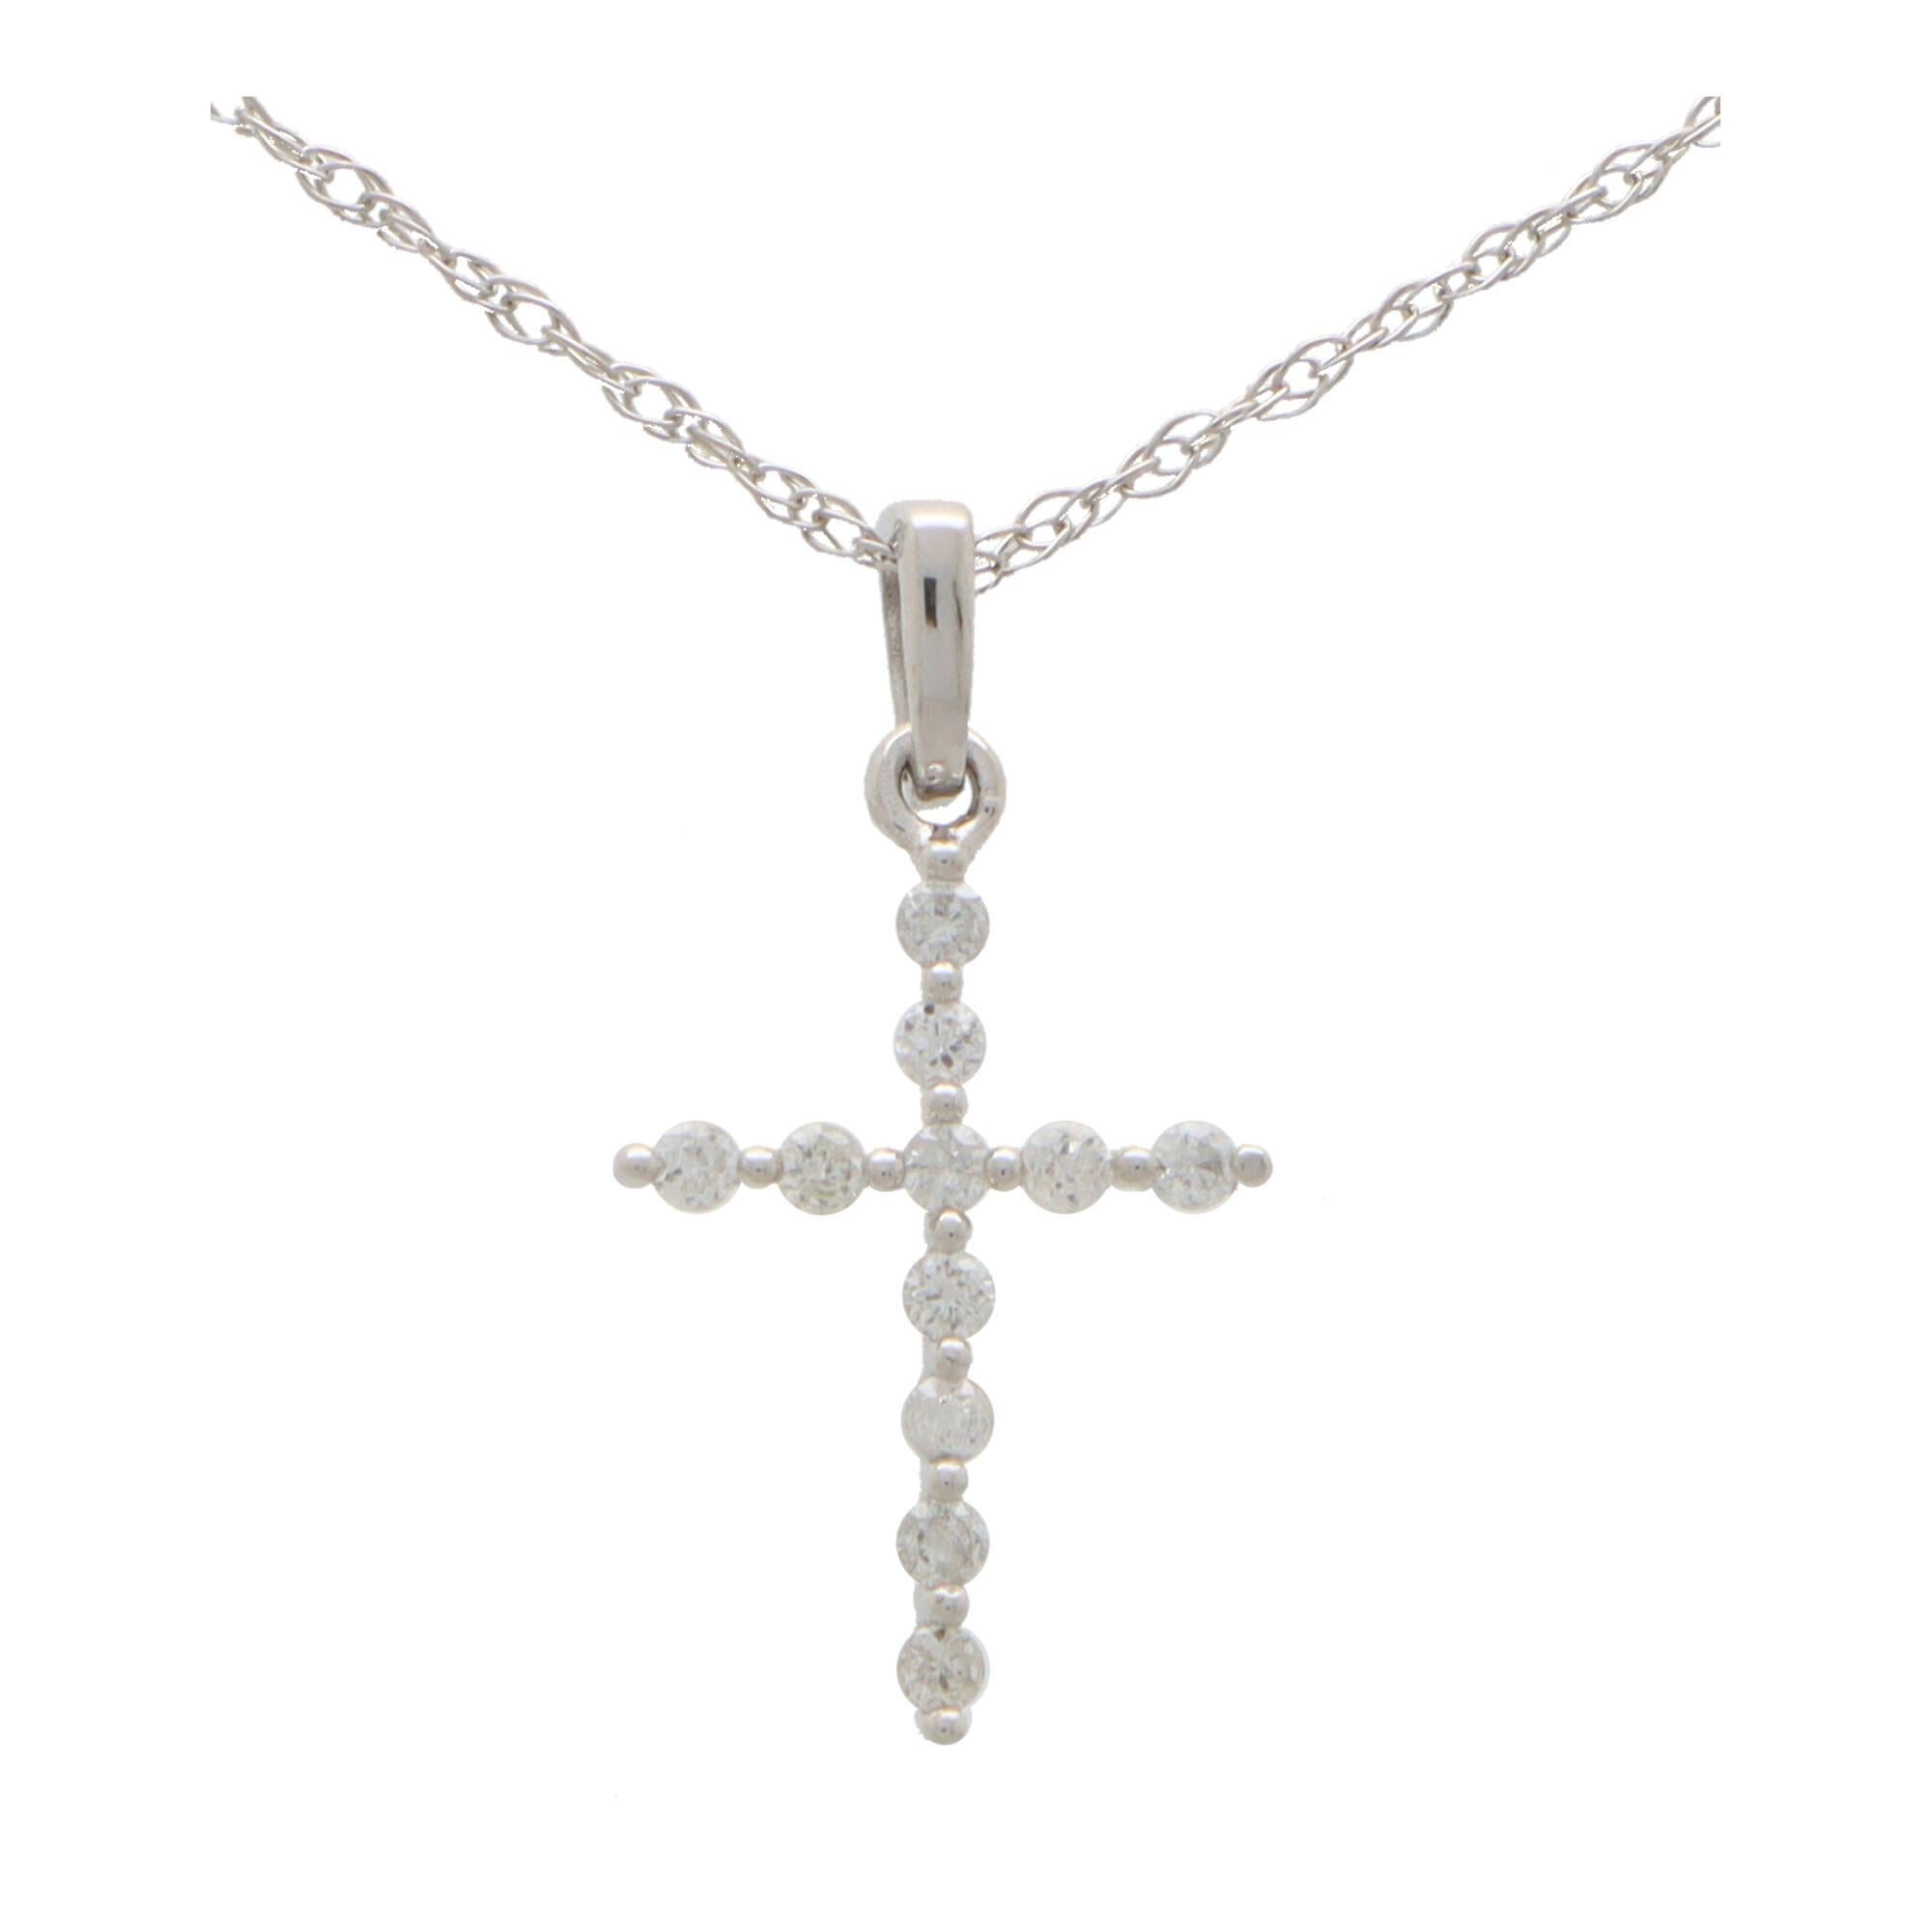 Collier pendentif croix en diamant serti en or blanc 14k.

Le pendentif représente un motif de croix et est serti de 11 diamants ronds de taille brillant. La croix est suspendue à un anneau en or blanc et à une fine chaîne de 18 pouces en or